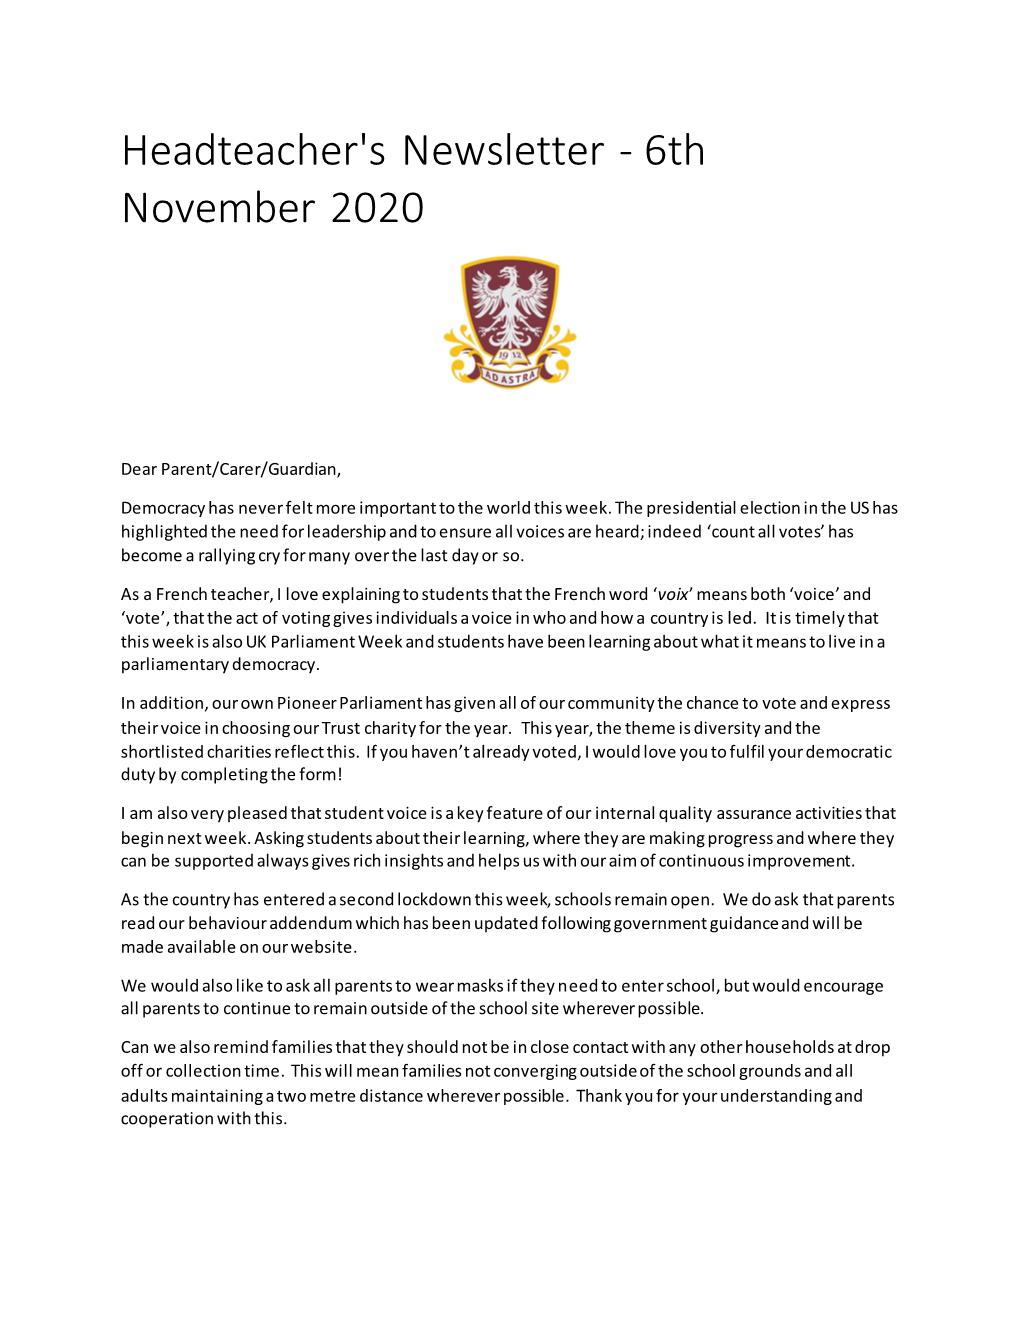 Headteacher's Newsletter - 6Th November 2020